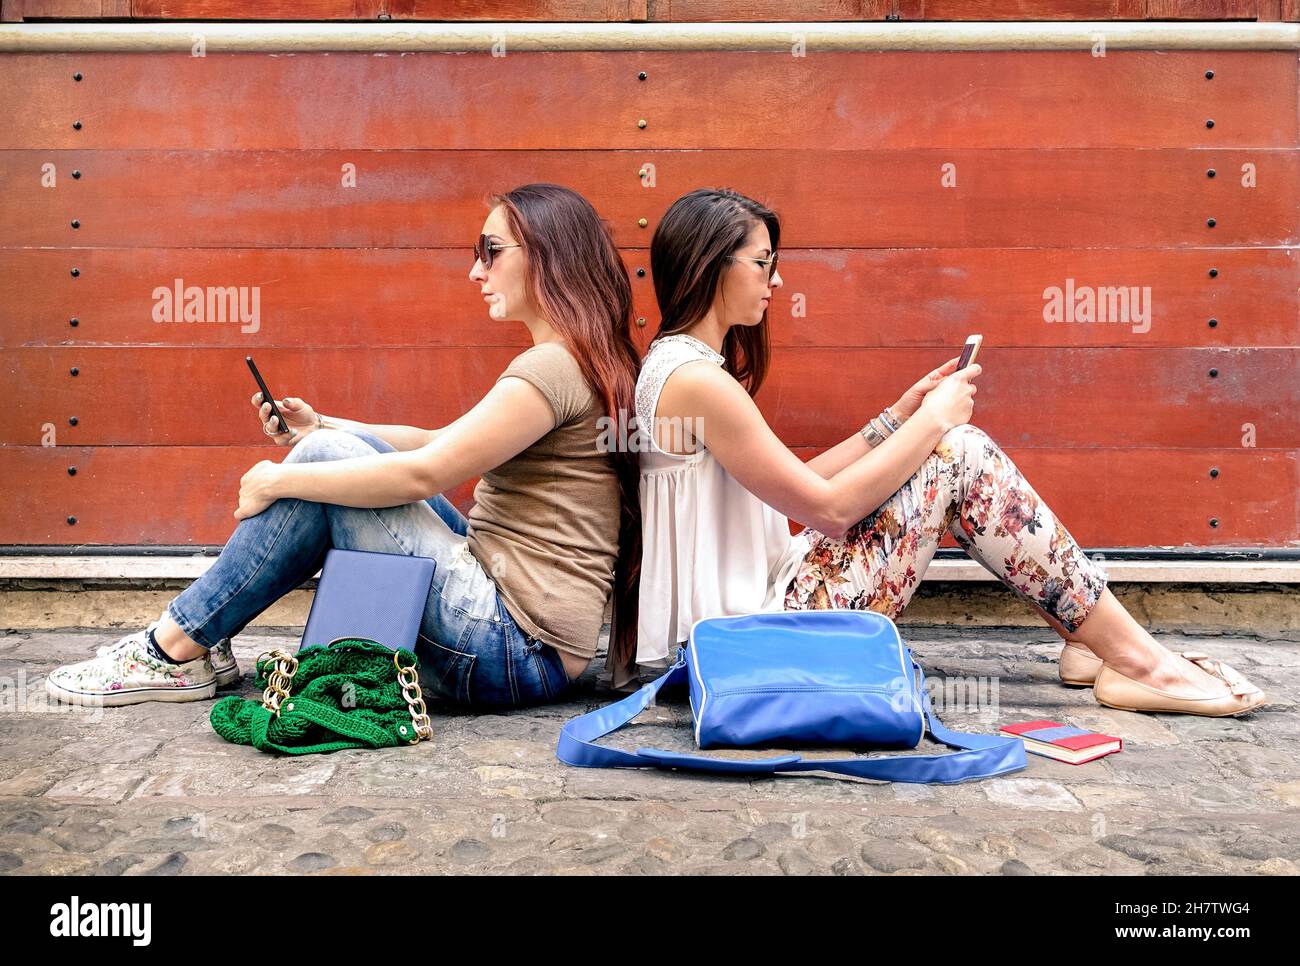 Hipster paar Freundinnen in Desinteresse Moment mit mobilen Smartphones - Konzept der Beziehung Apathie Traurigkeit und Isolation Stockfoto